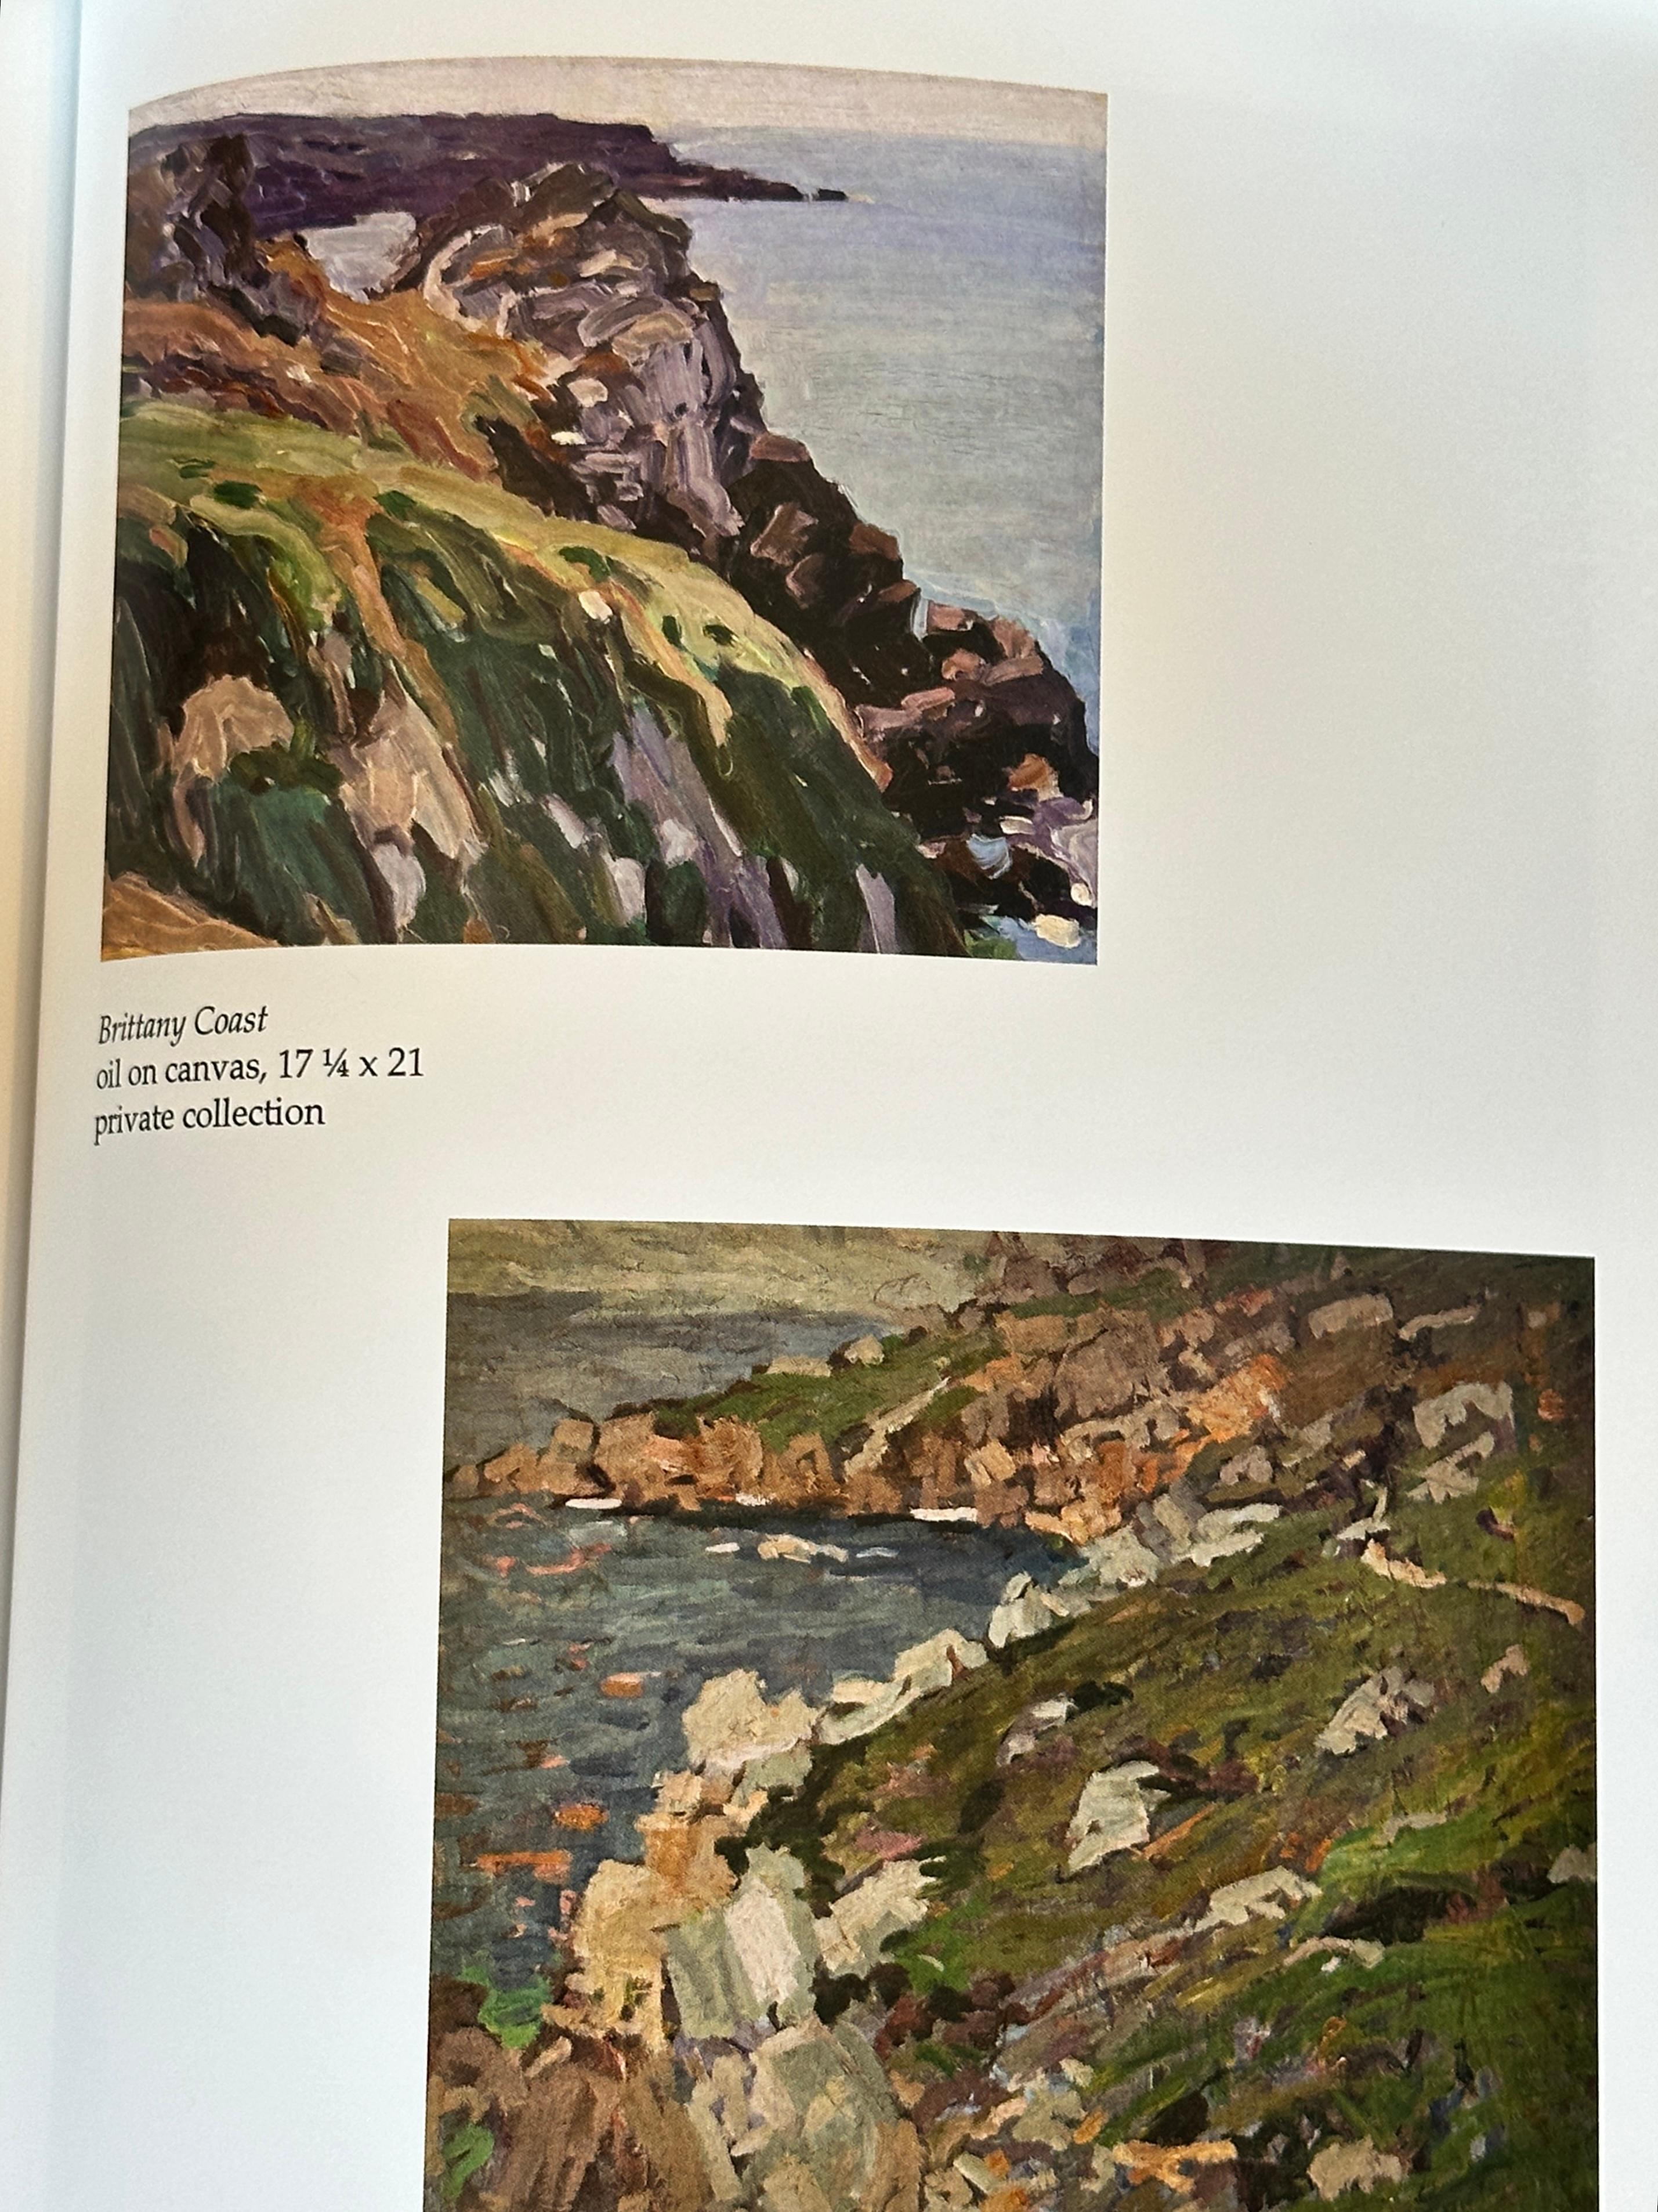 Brittany Coast (dans le livre d'Oberteuffer à la page 45), paysage, paysage côtier - Impressionnisme abstrait Painting par George Obertouffer